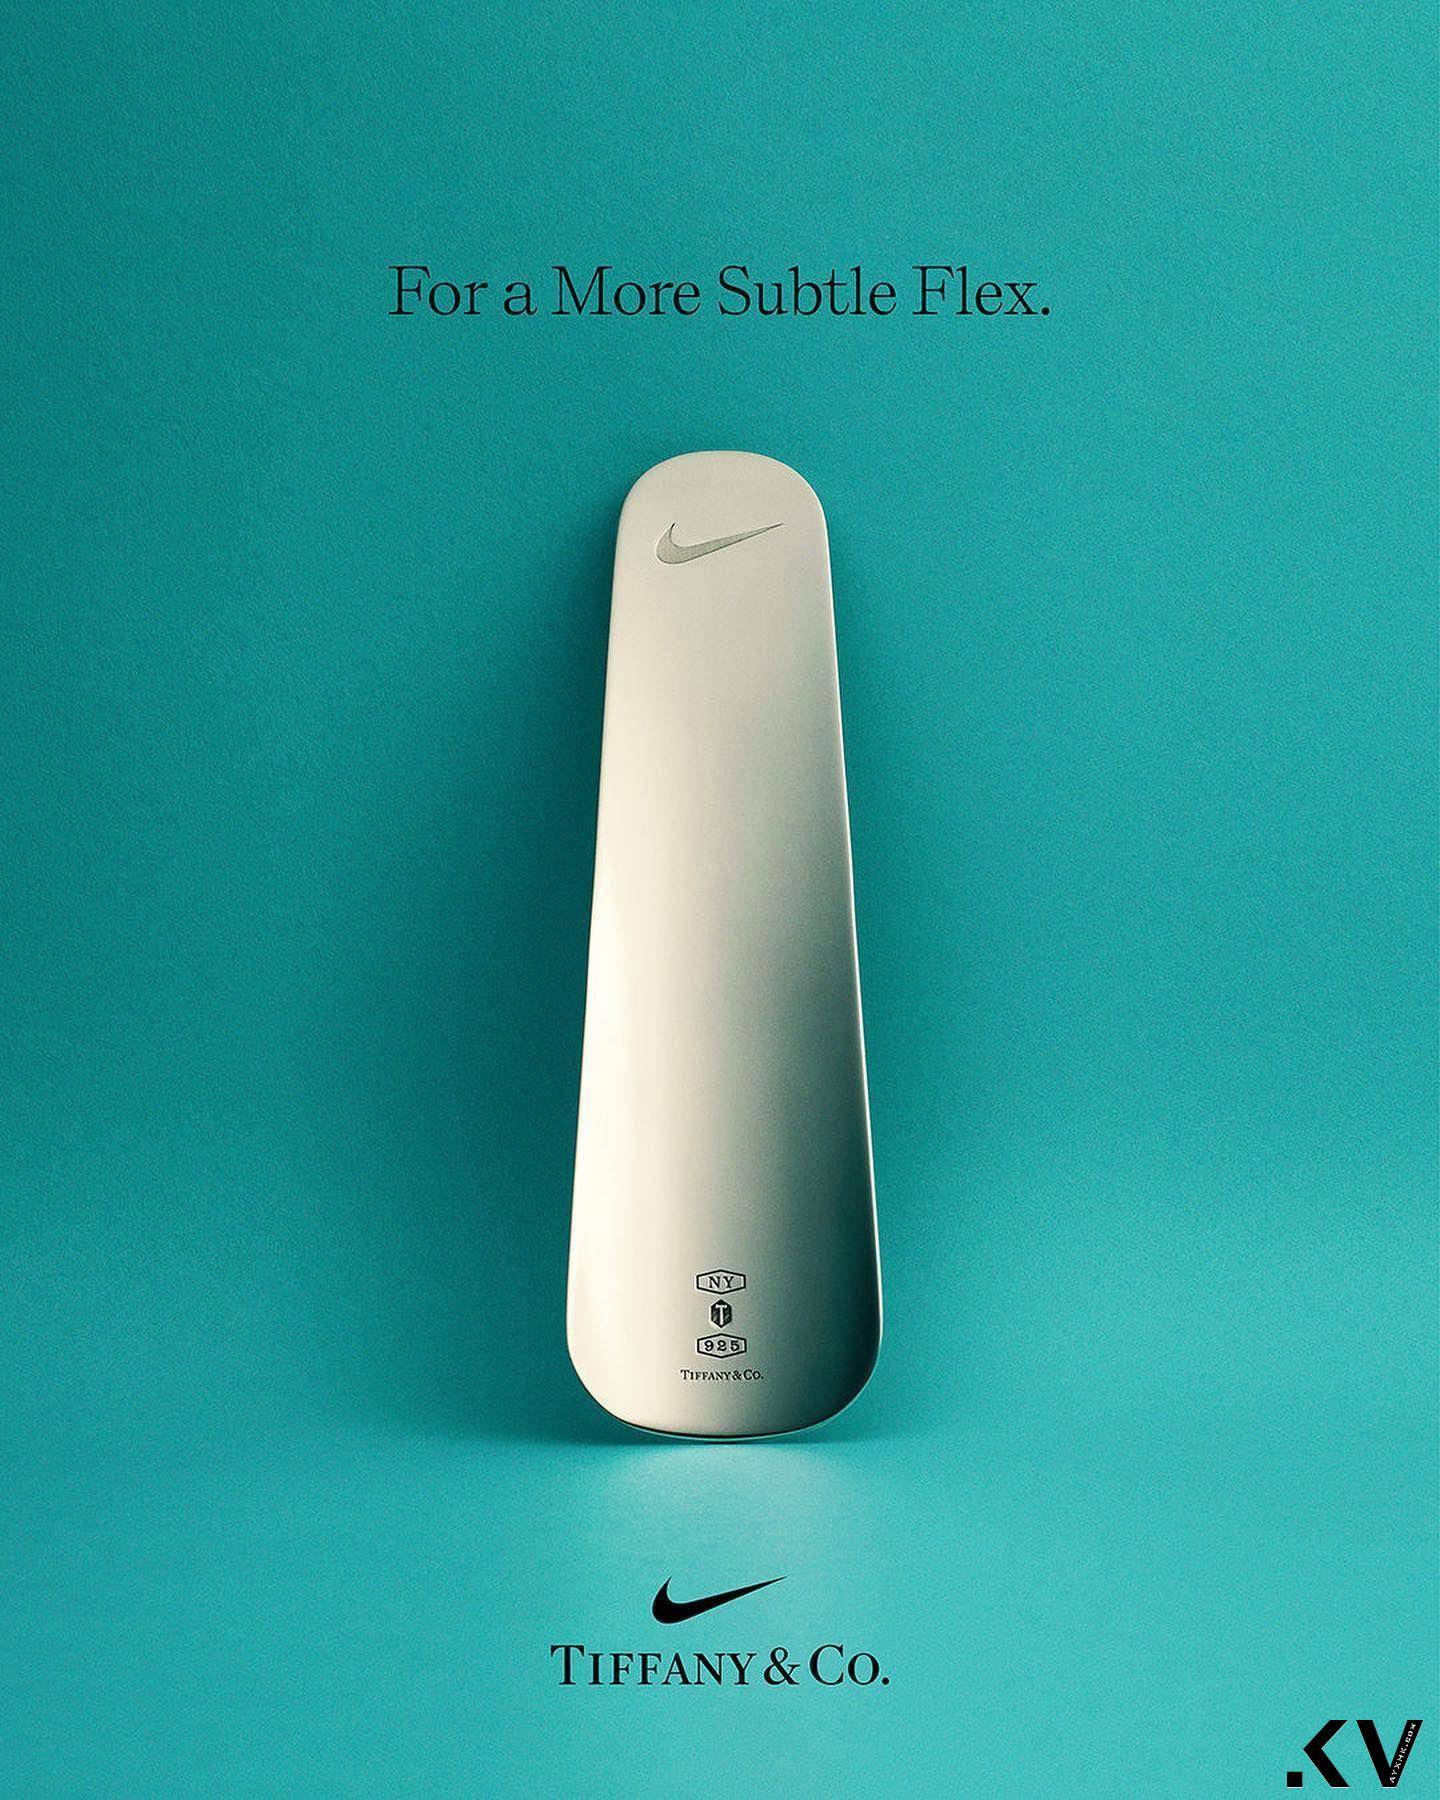 Tiffany联名Nike出鞋刷！　网炸锅大骂“天大笑话” 奢侈品牌 图2张